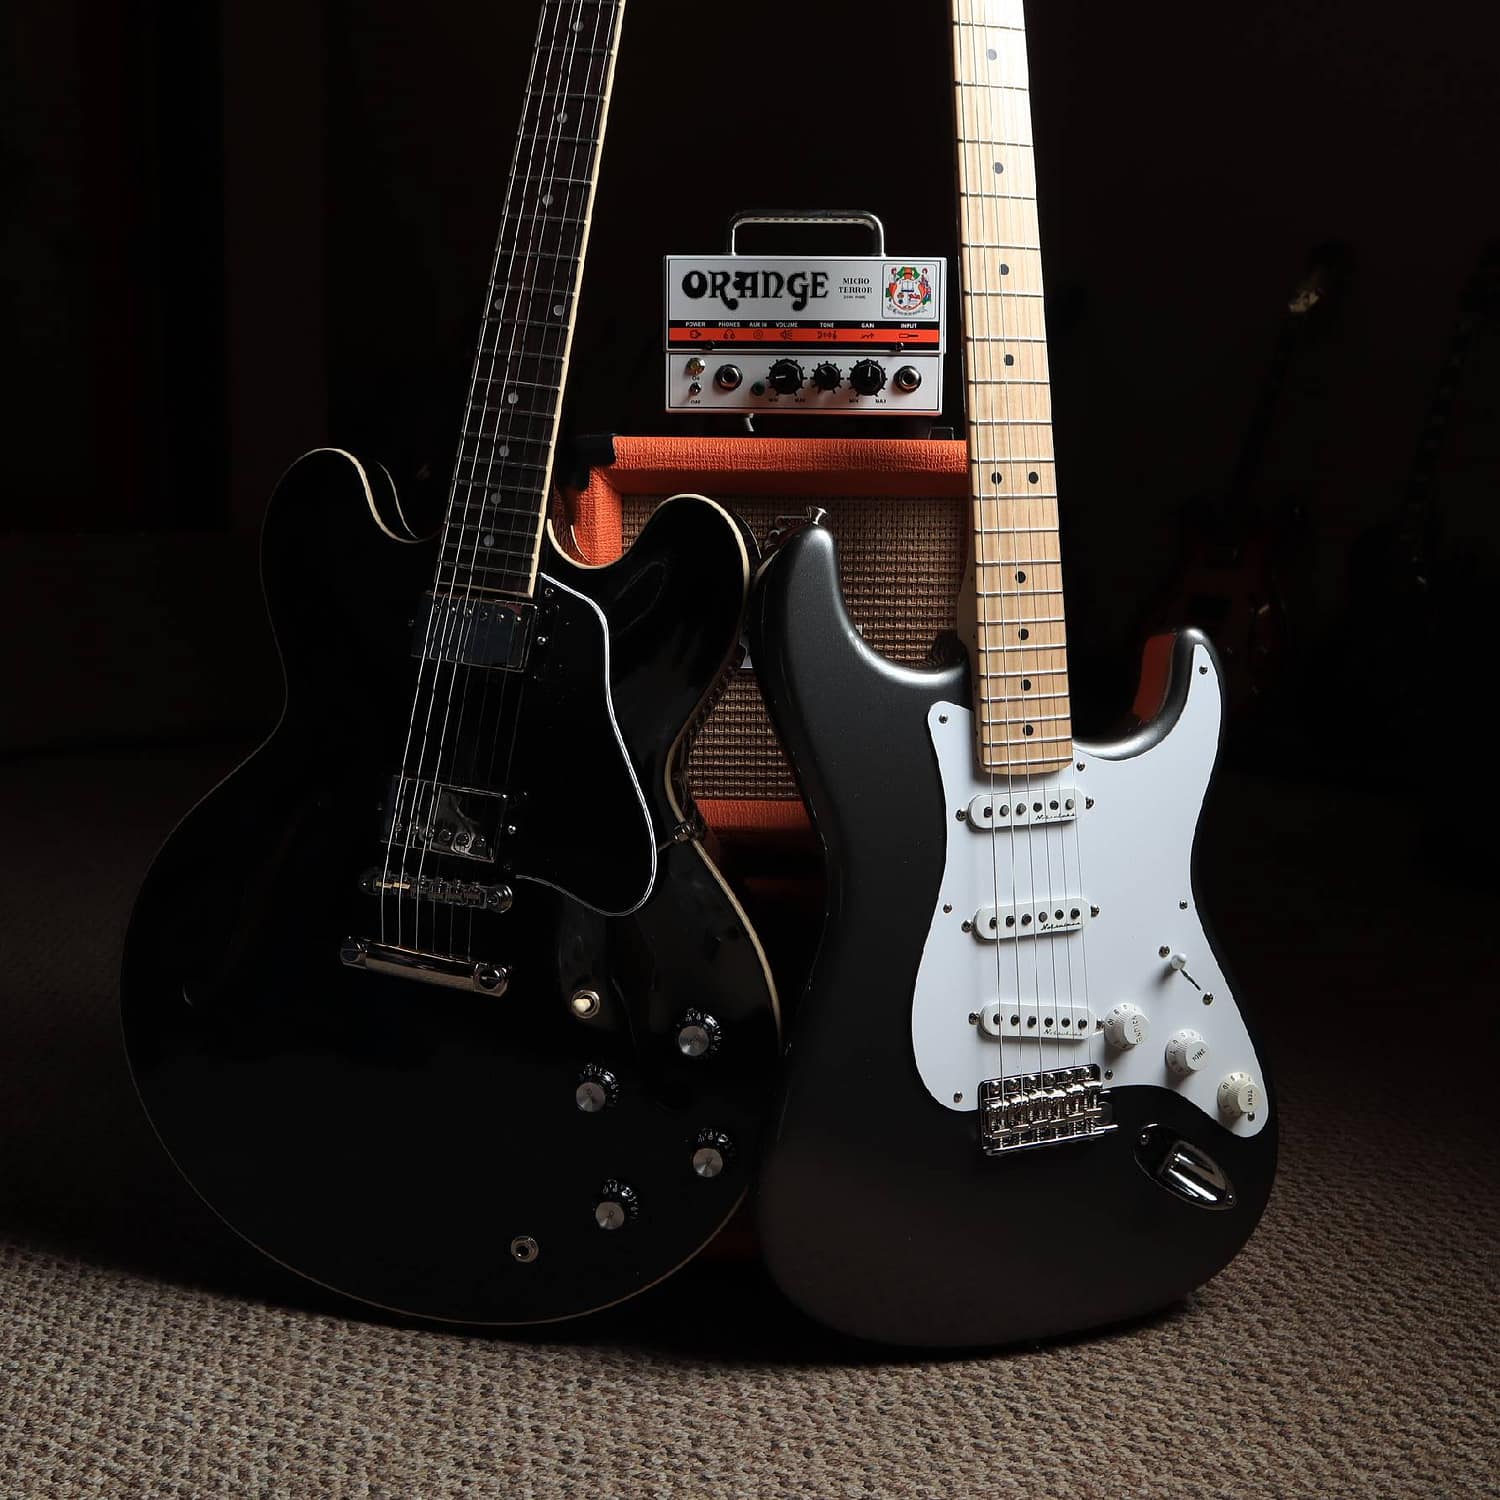 Fender-Stratocaster-Plus-Gibson-ES335-plus-Orange-Amp